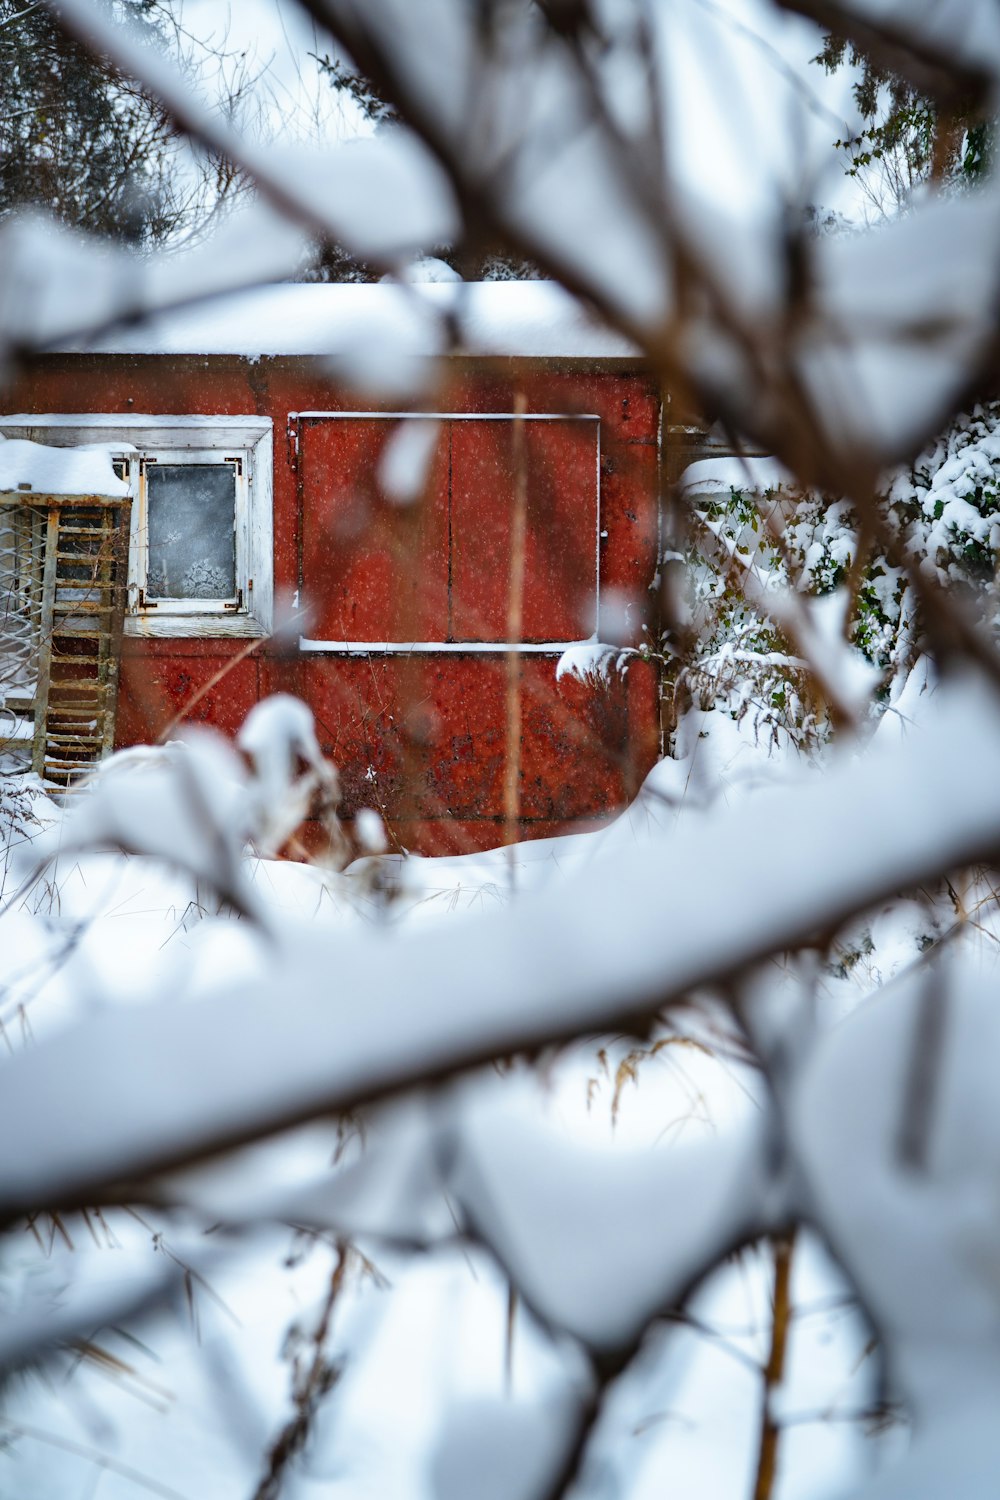 Un edificio rojo sentado en medio de un bosque cubierto de nieve